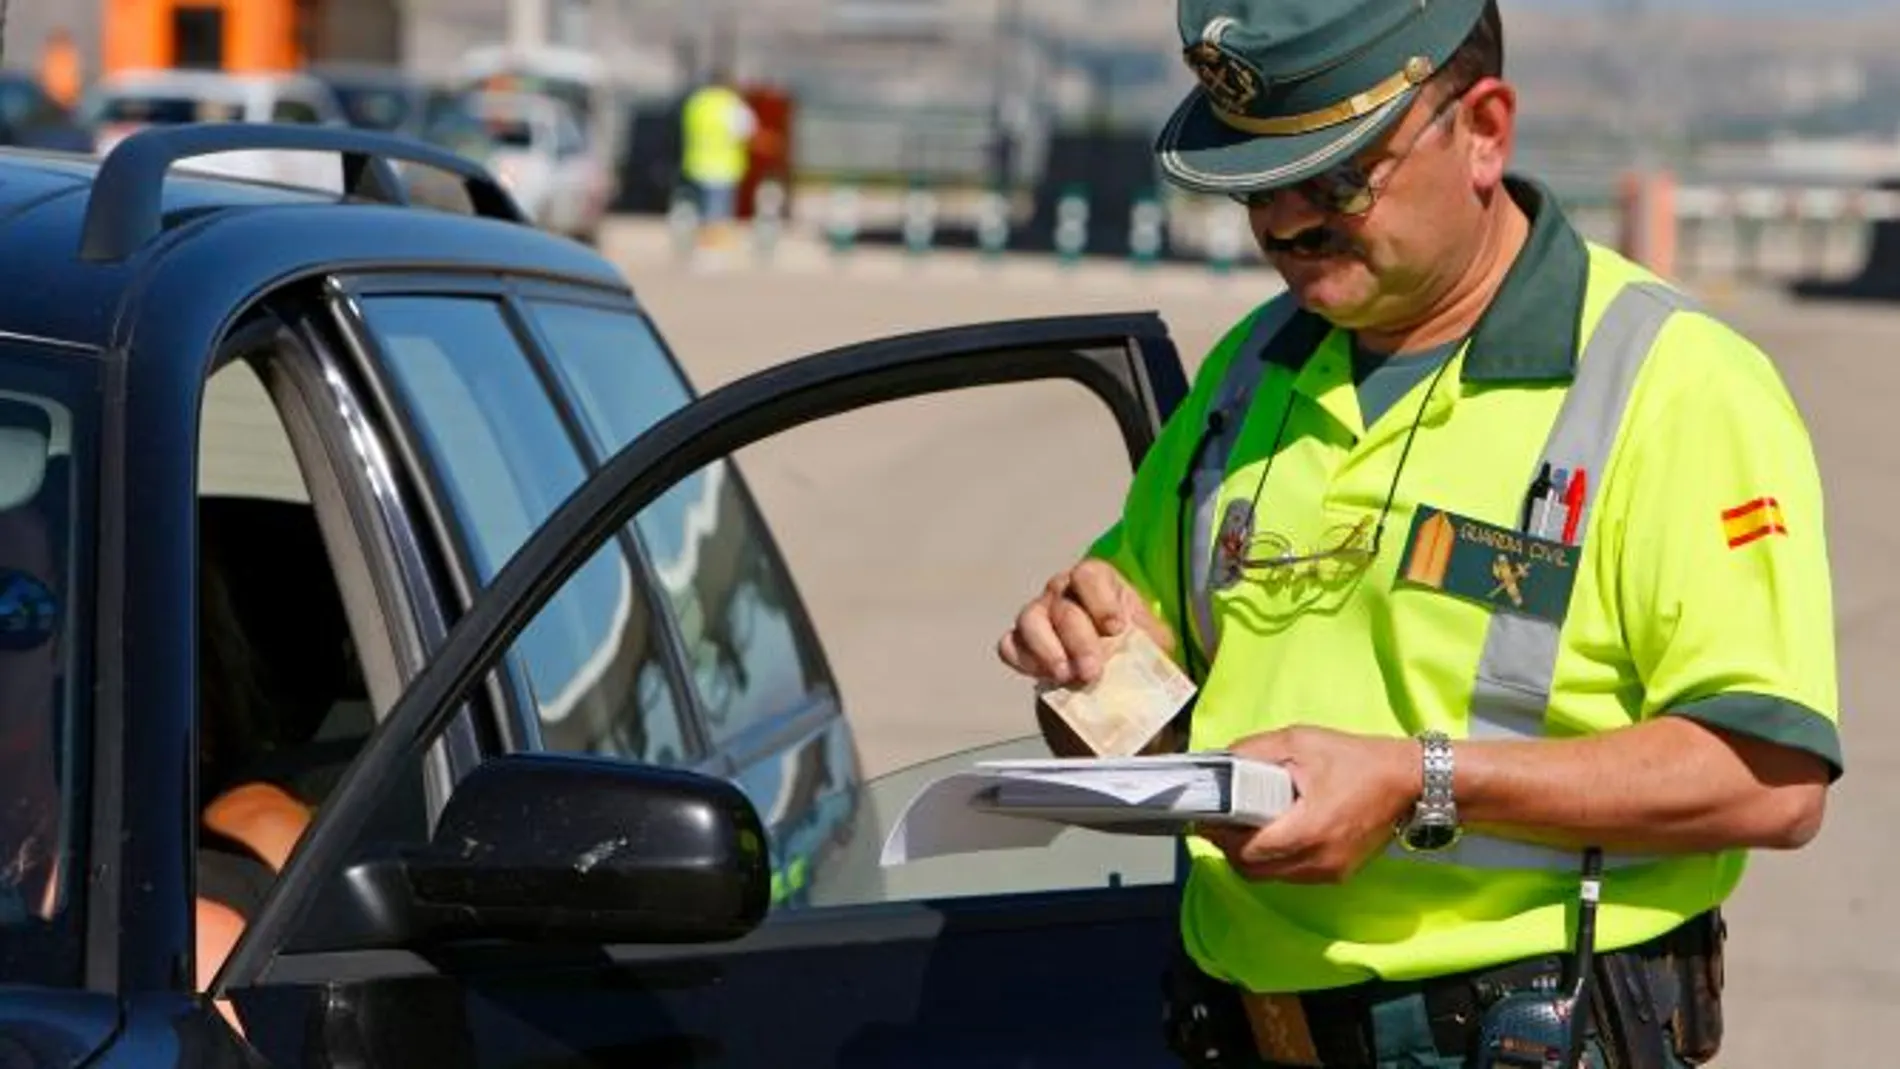 Para evitar accidentes en las glorietas, la Ley sobre Tráfico y Seguridad Vial prevé una serie de sanciones muy serias para los conductores y para sus bolsillos